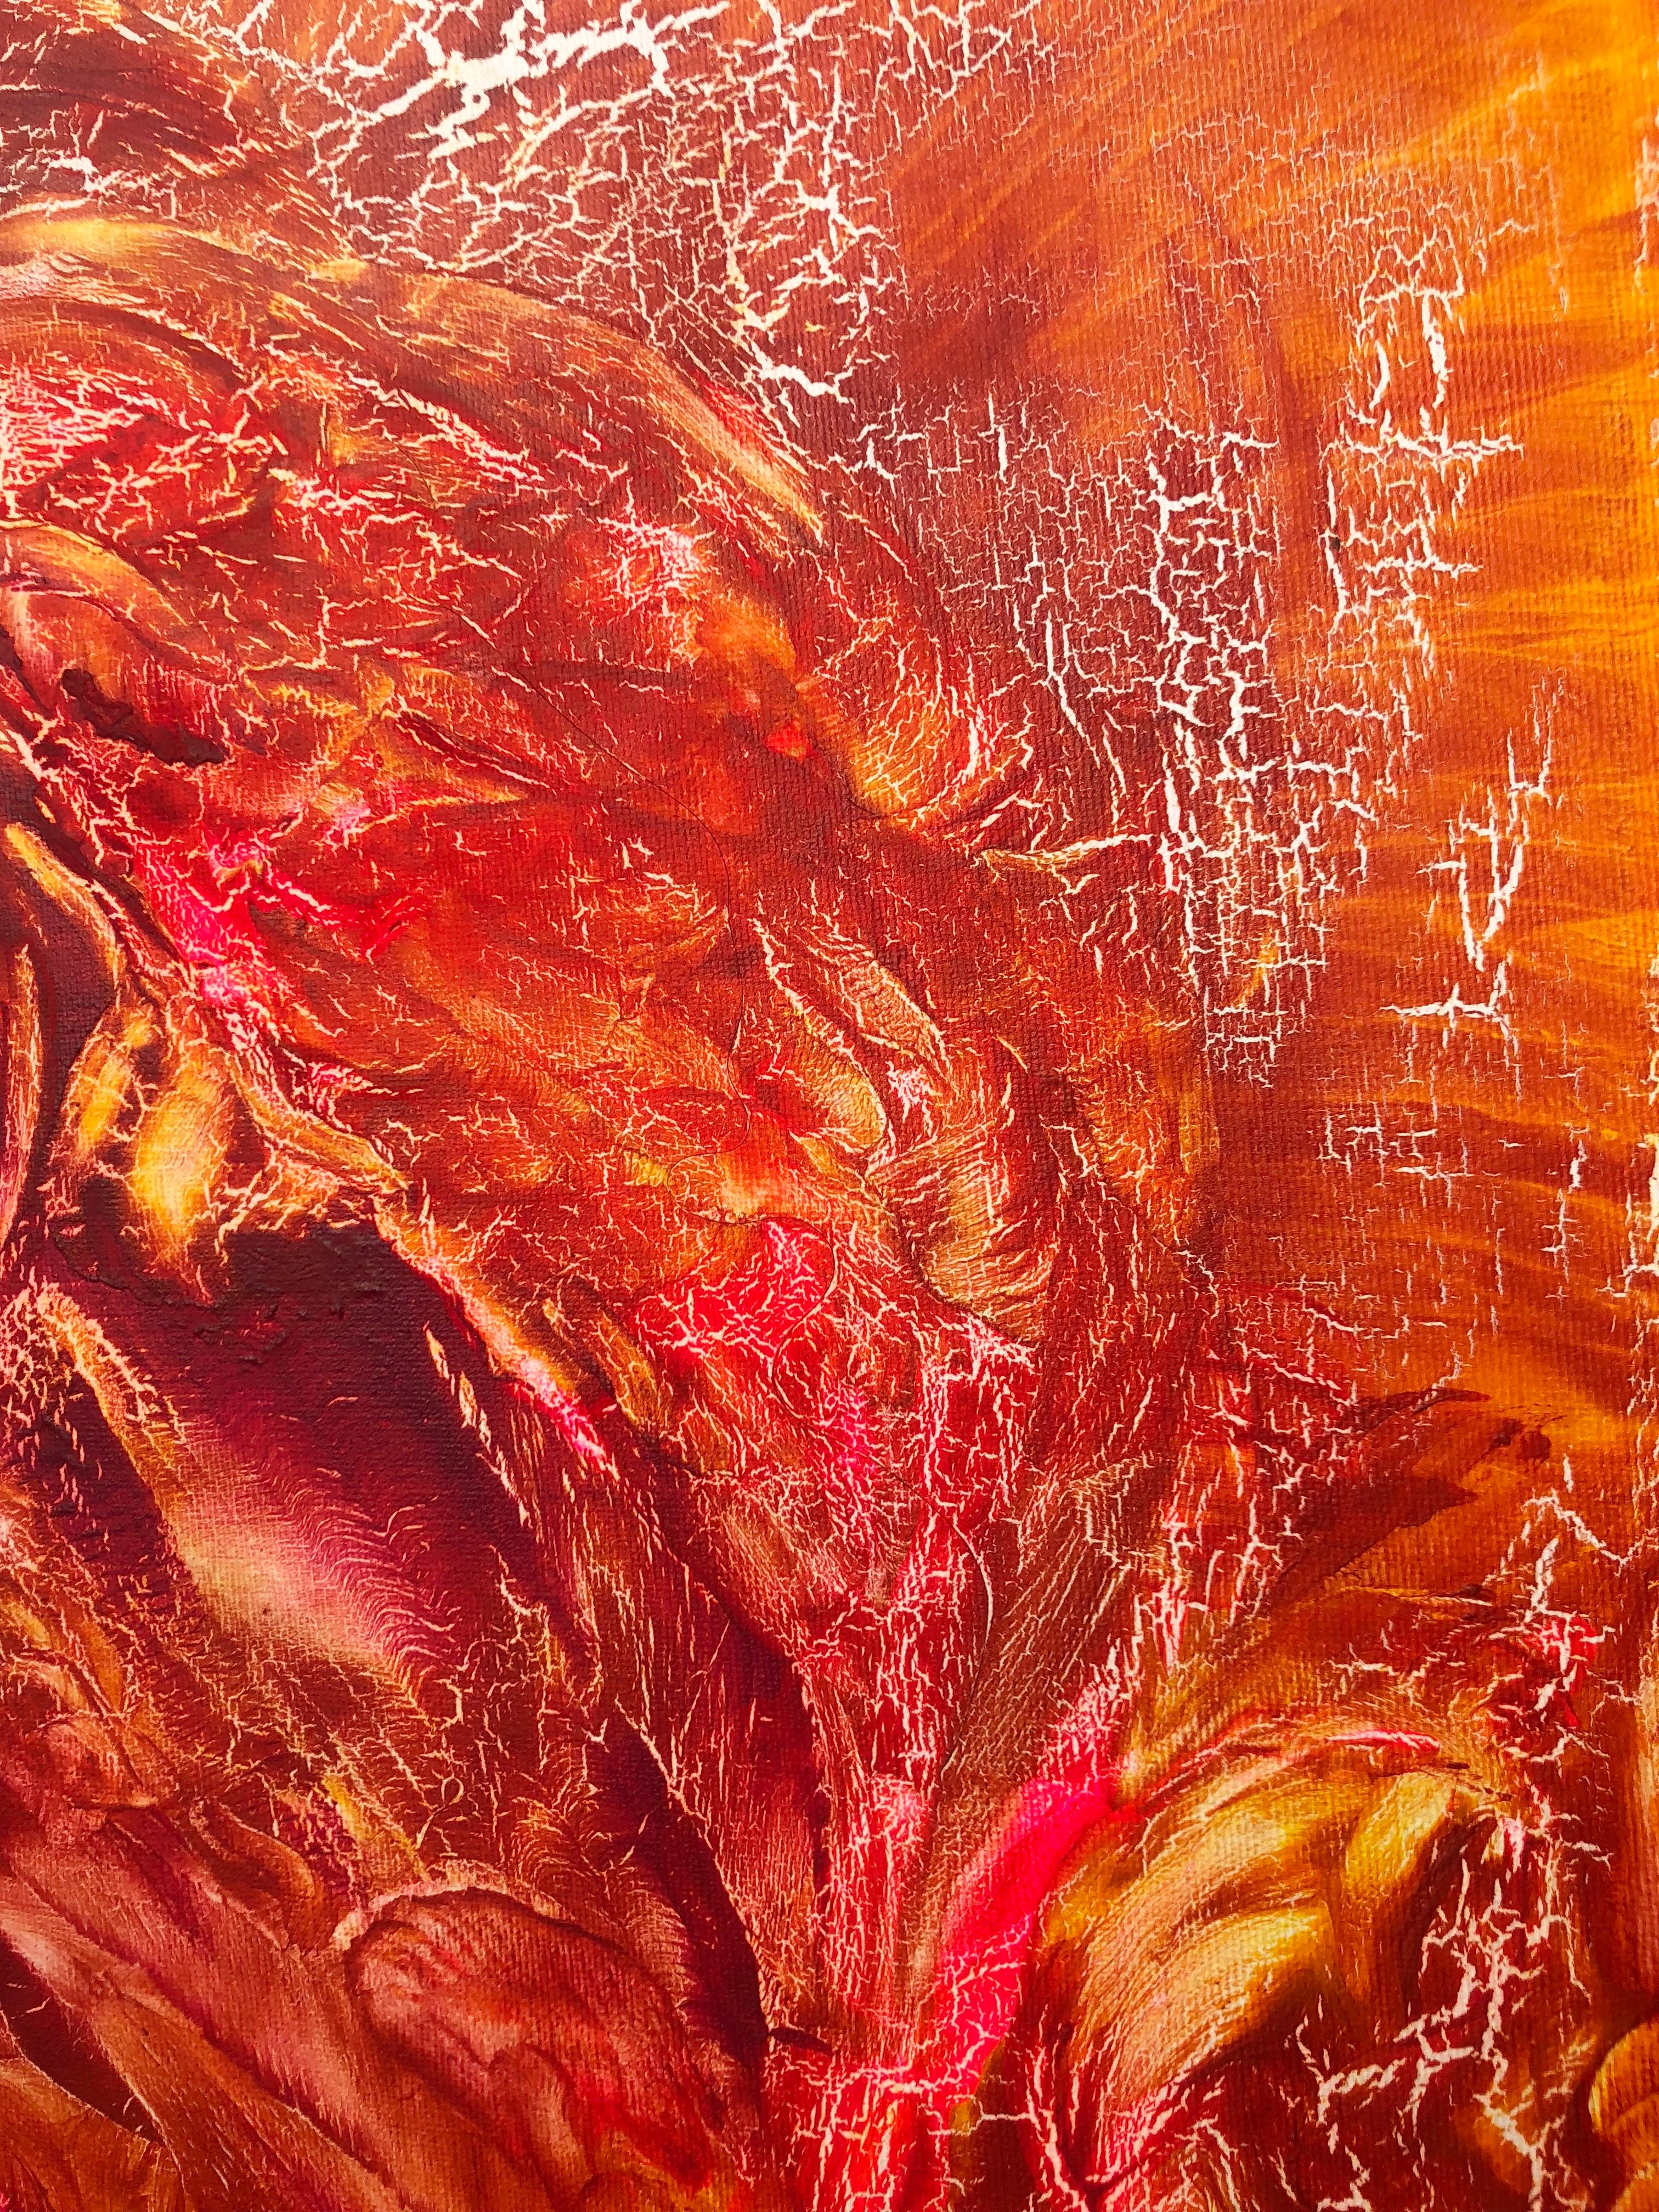 Oil painting on canvas -  contemporary art 21st century - red, orange, yellow (Abstrakter Impressionismus), Mixed Media Art, von Volodymyr Zayichenko